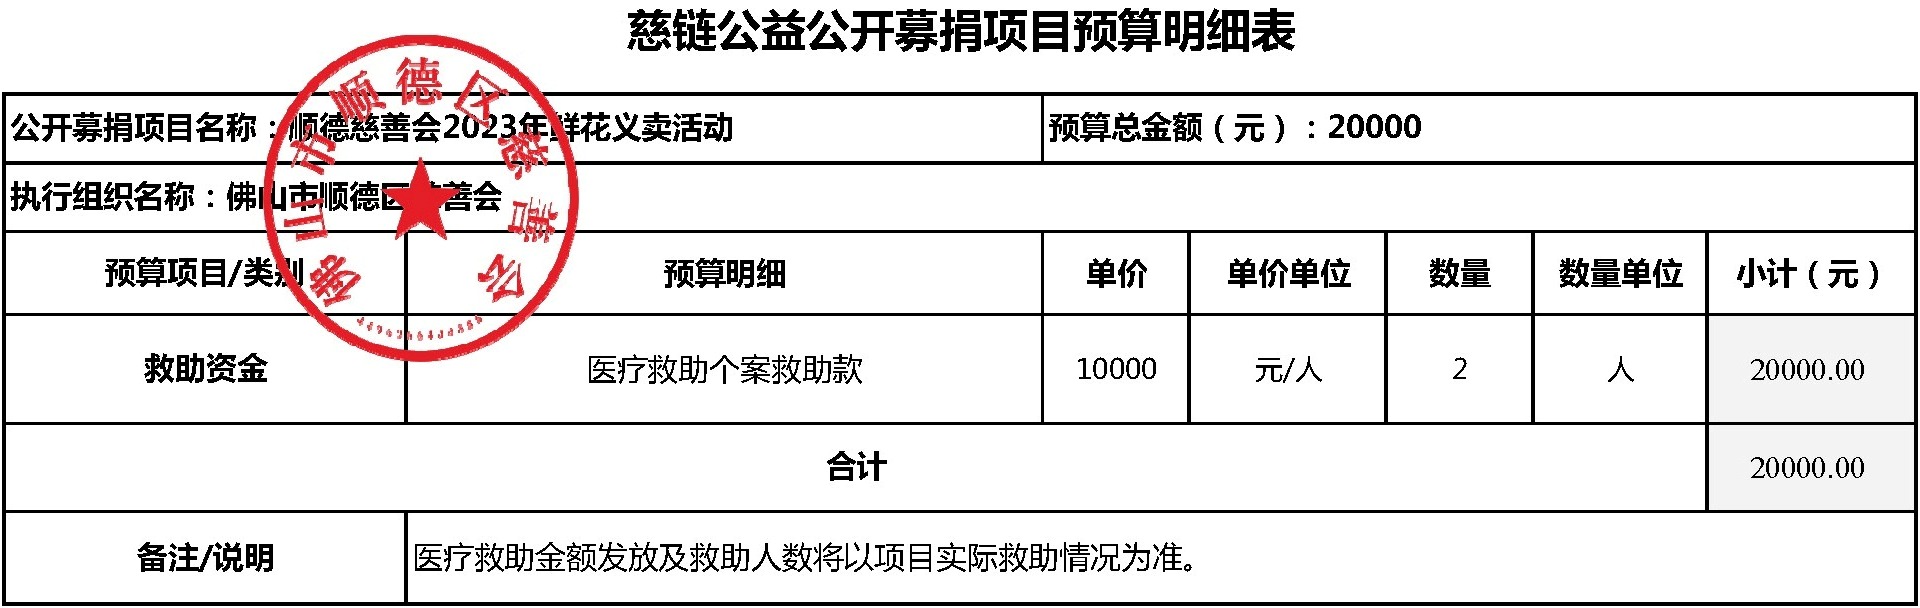 20230321修改-顺德慈善会2023年鲜花义卖活动-项目预算明细表.jpg